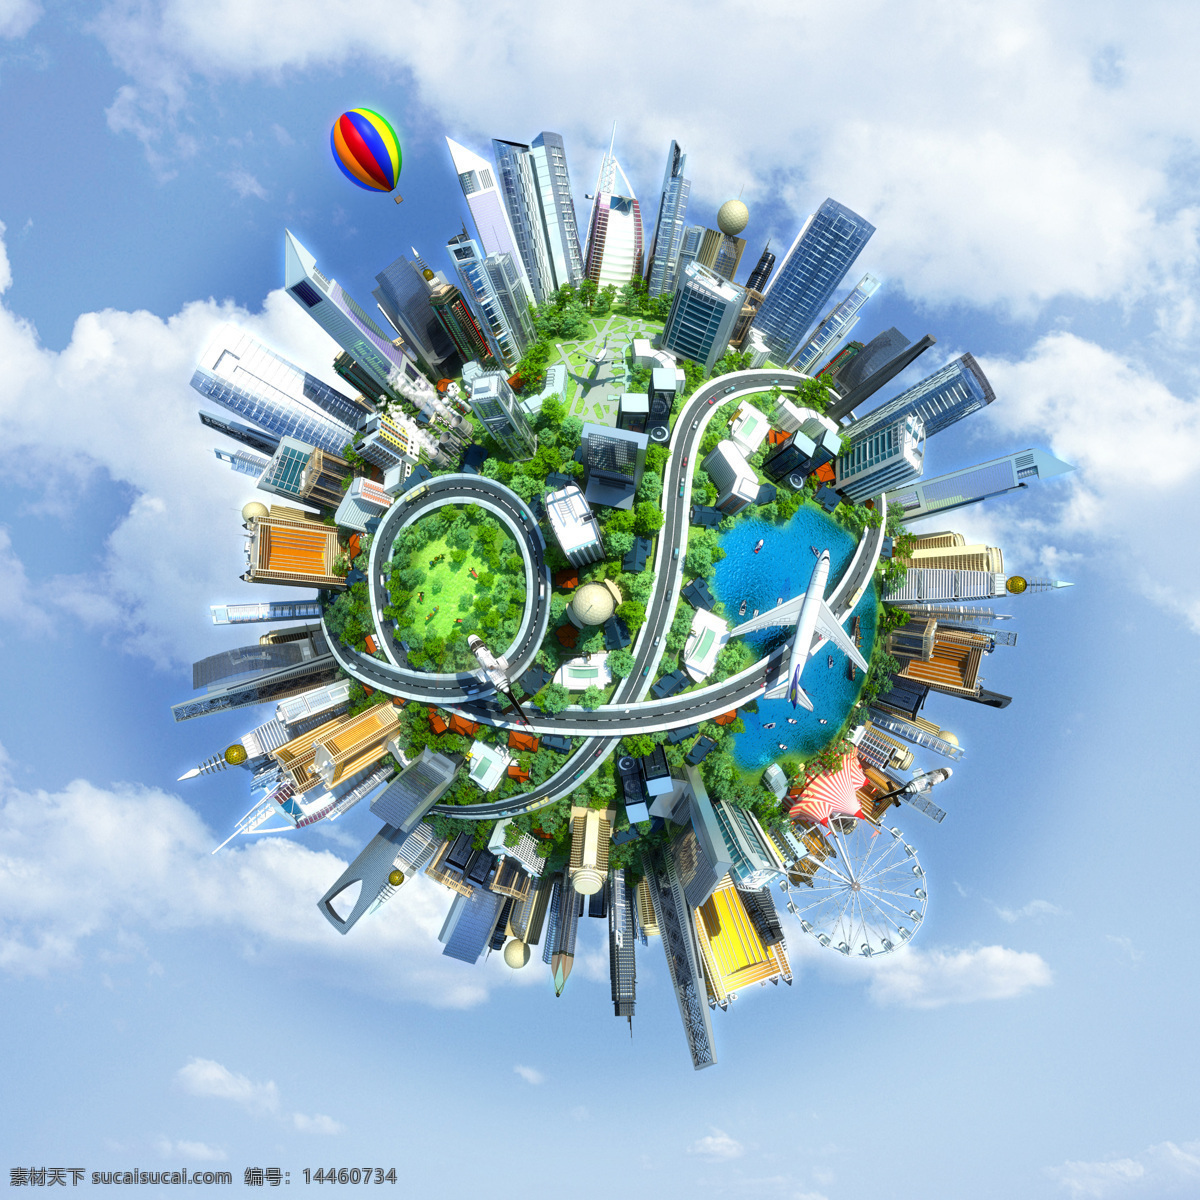 智慧城市 物联网 地球 环保 信息时代 现代科技 交通工具